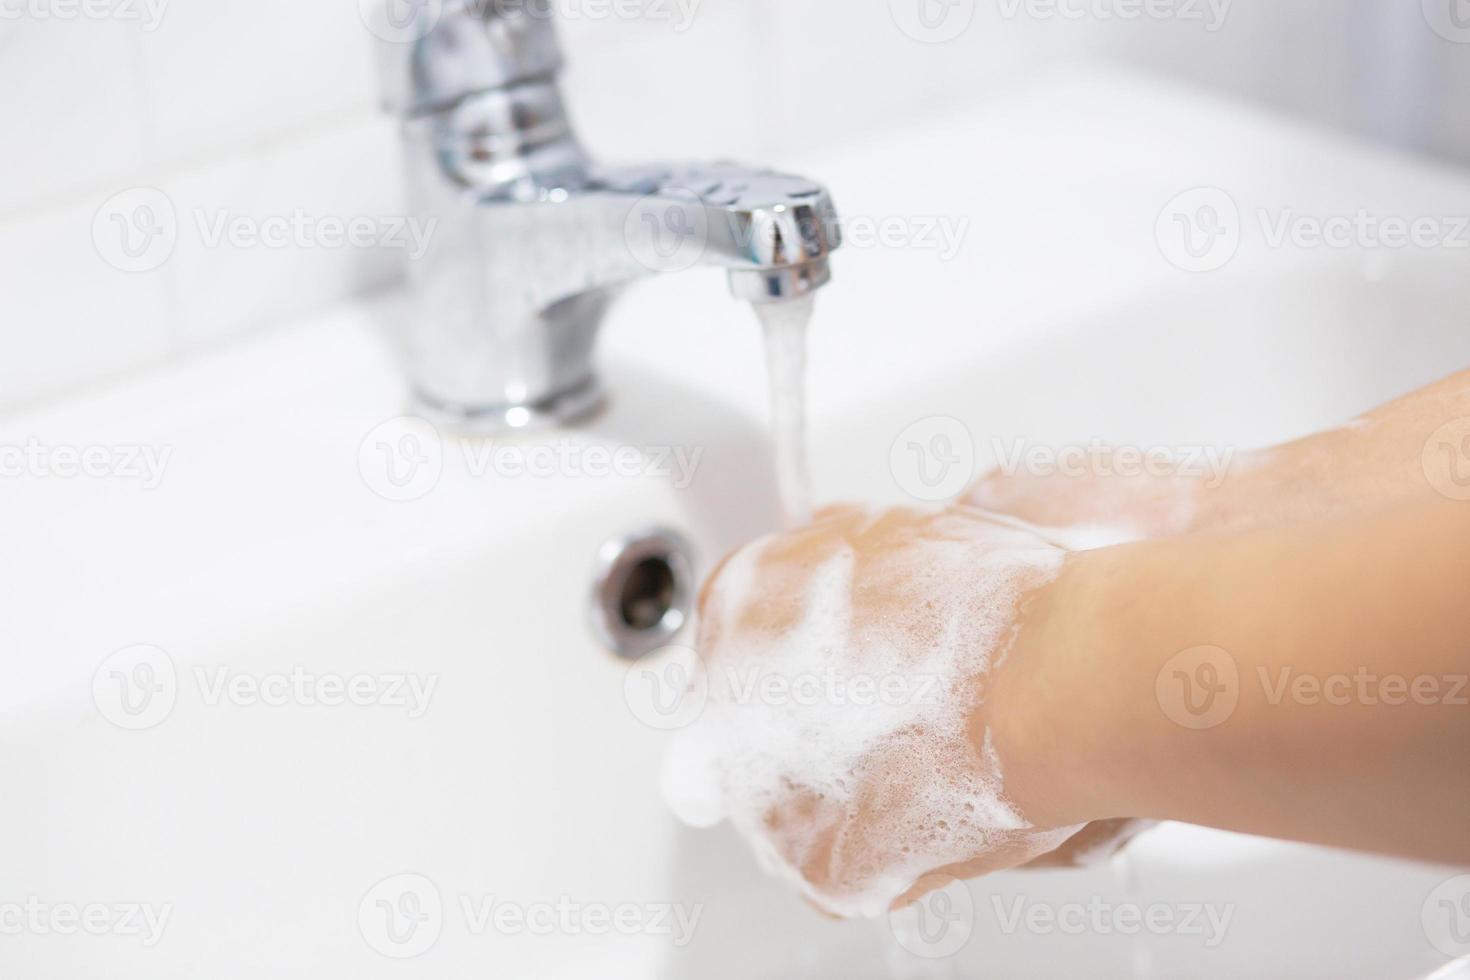 sempre lave as mãos depois de sair do banheiro para evitar vírus. foto